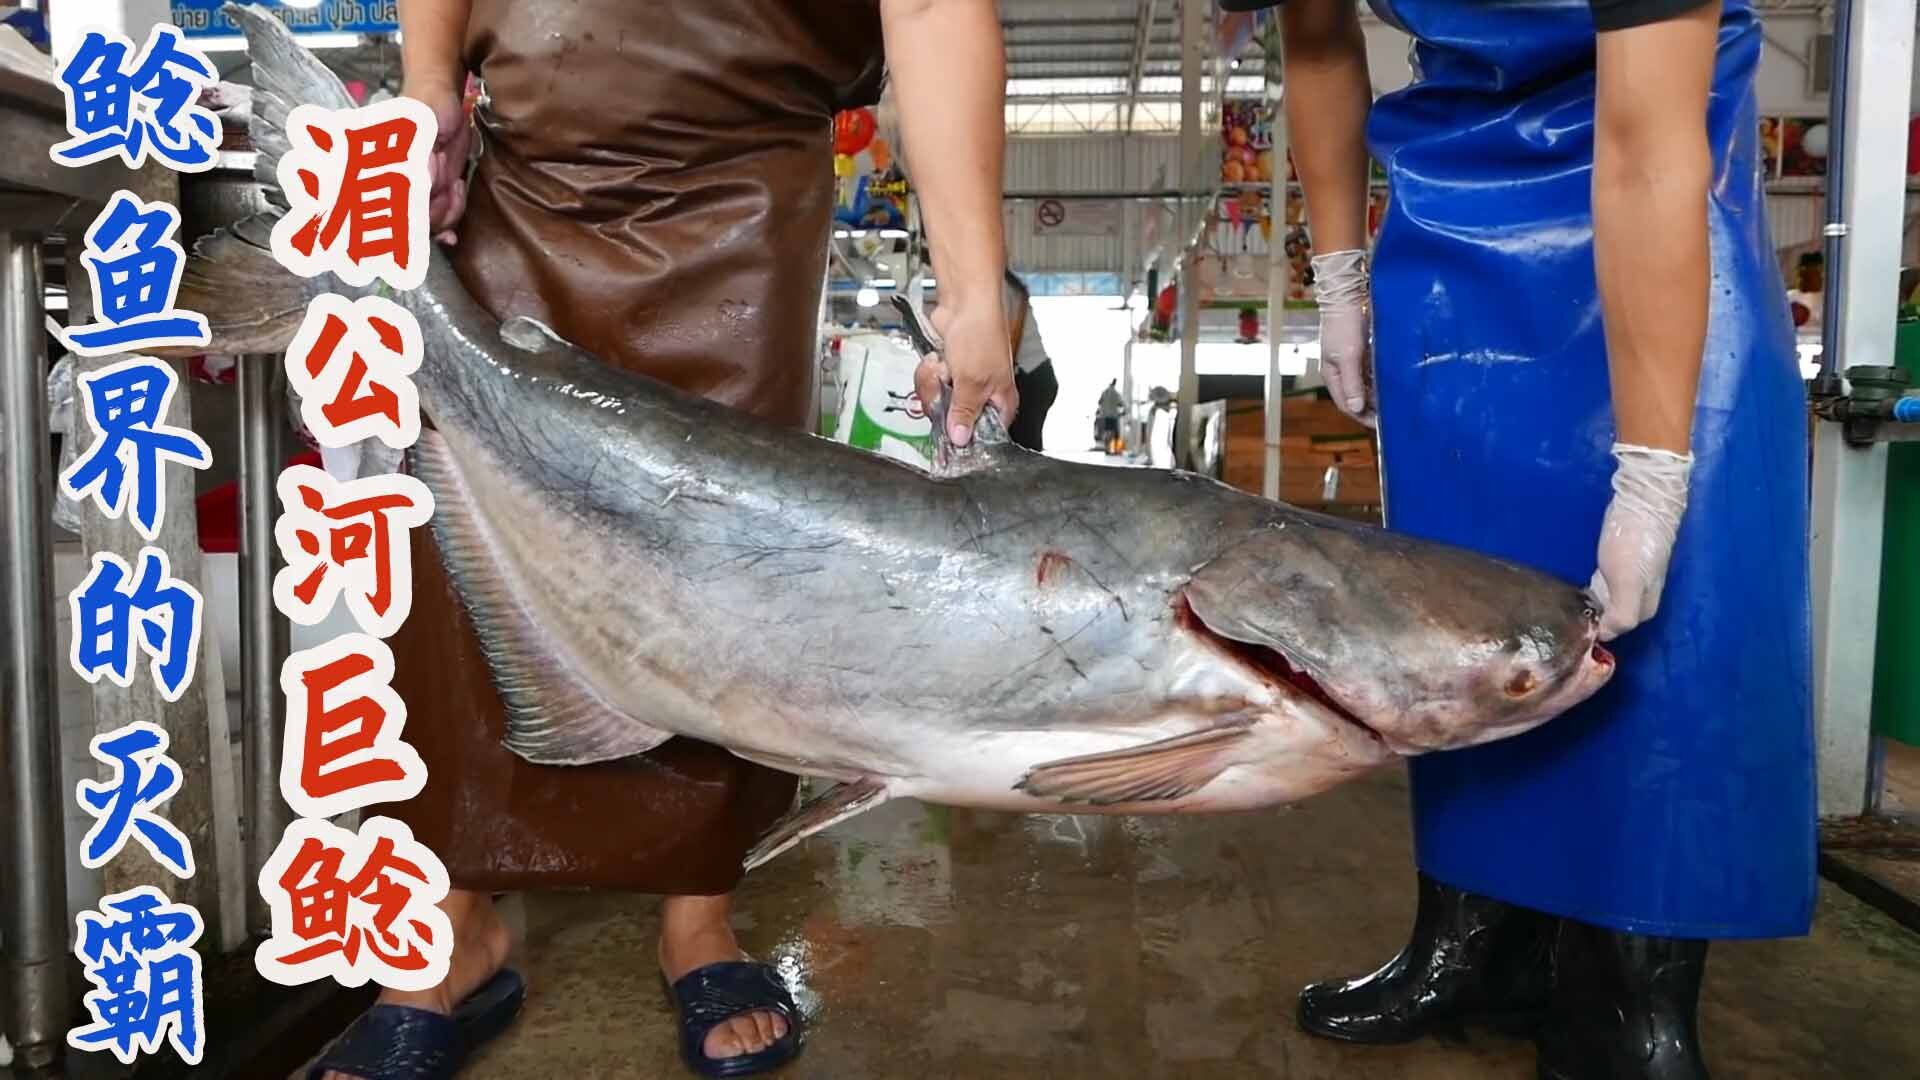 泰国厨师分割百斤湄公河巨鲶,切成鱼排肉嫩刺少如排骨